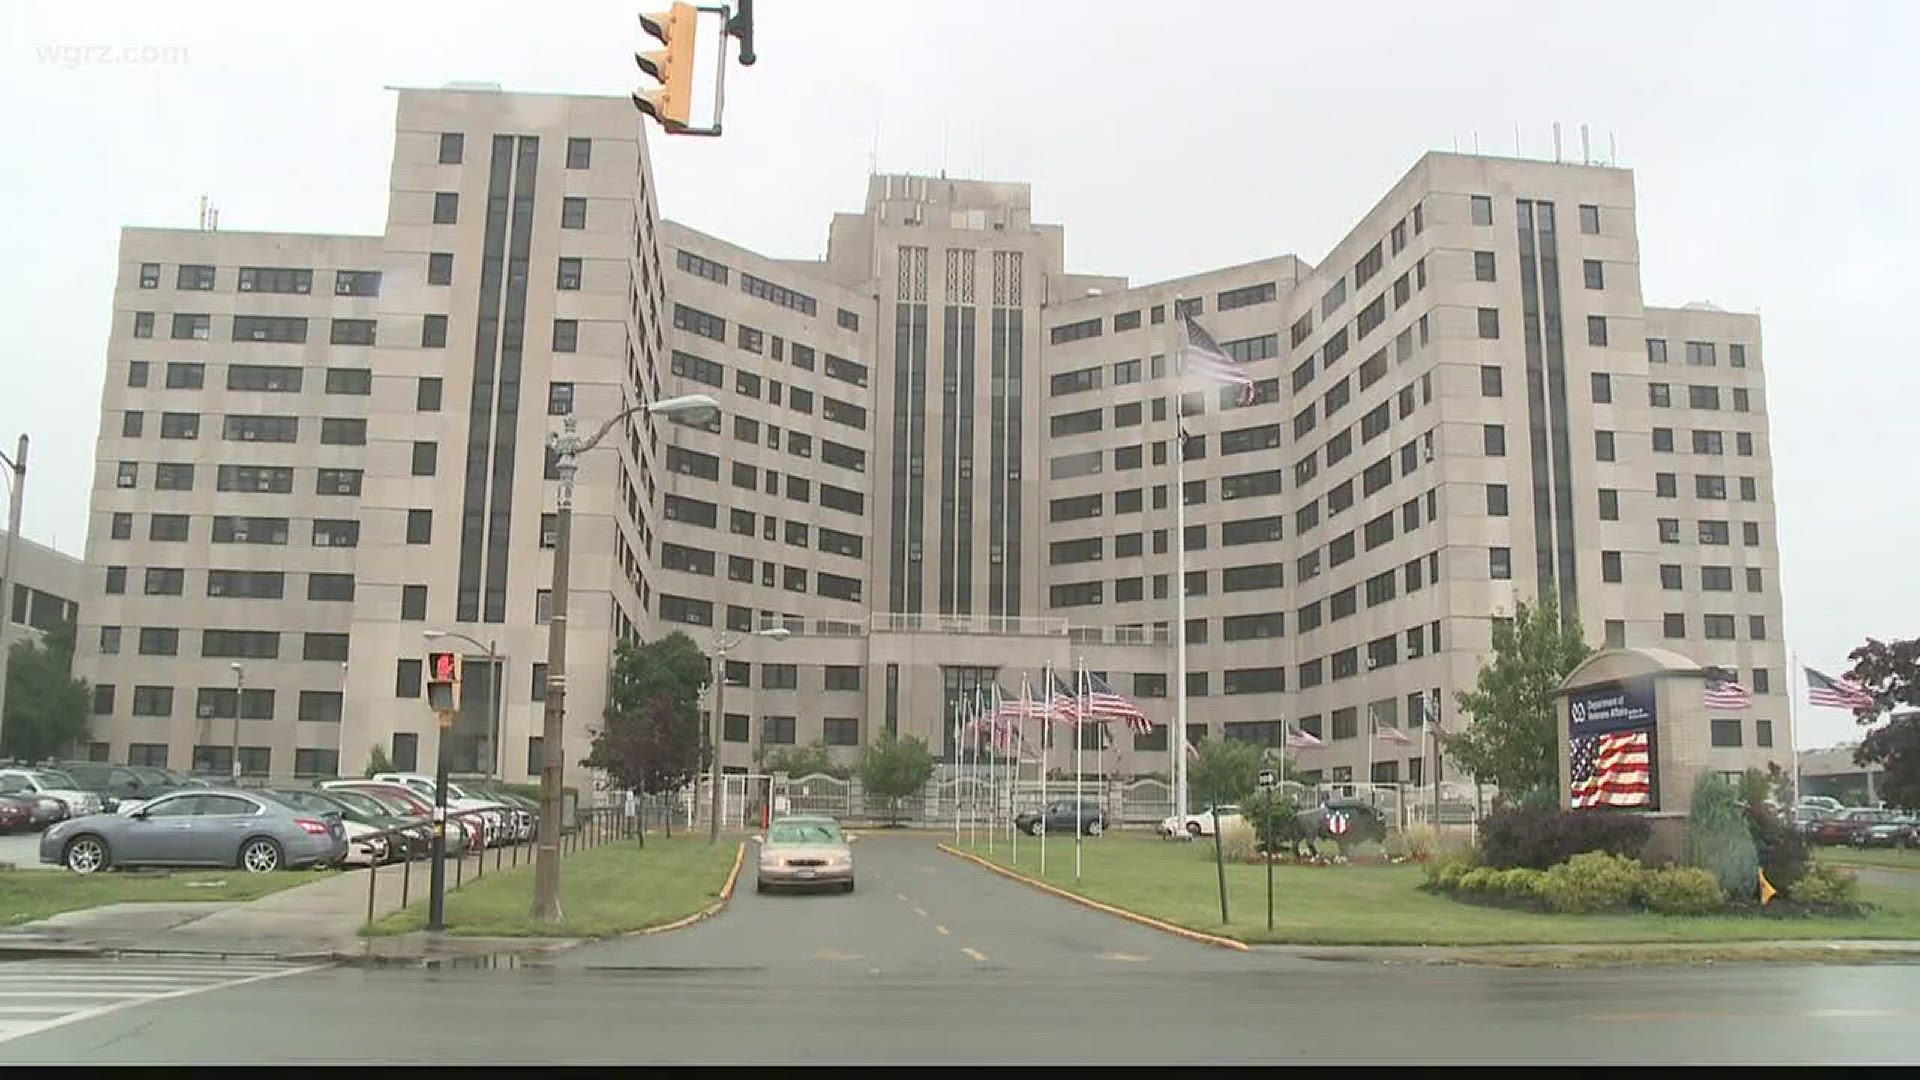 V.A. investigating harassment complaints.  Sources: Associate Medical Center Director "reassigned"